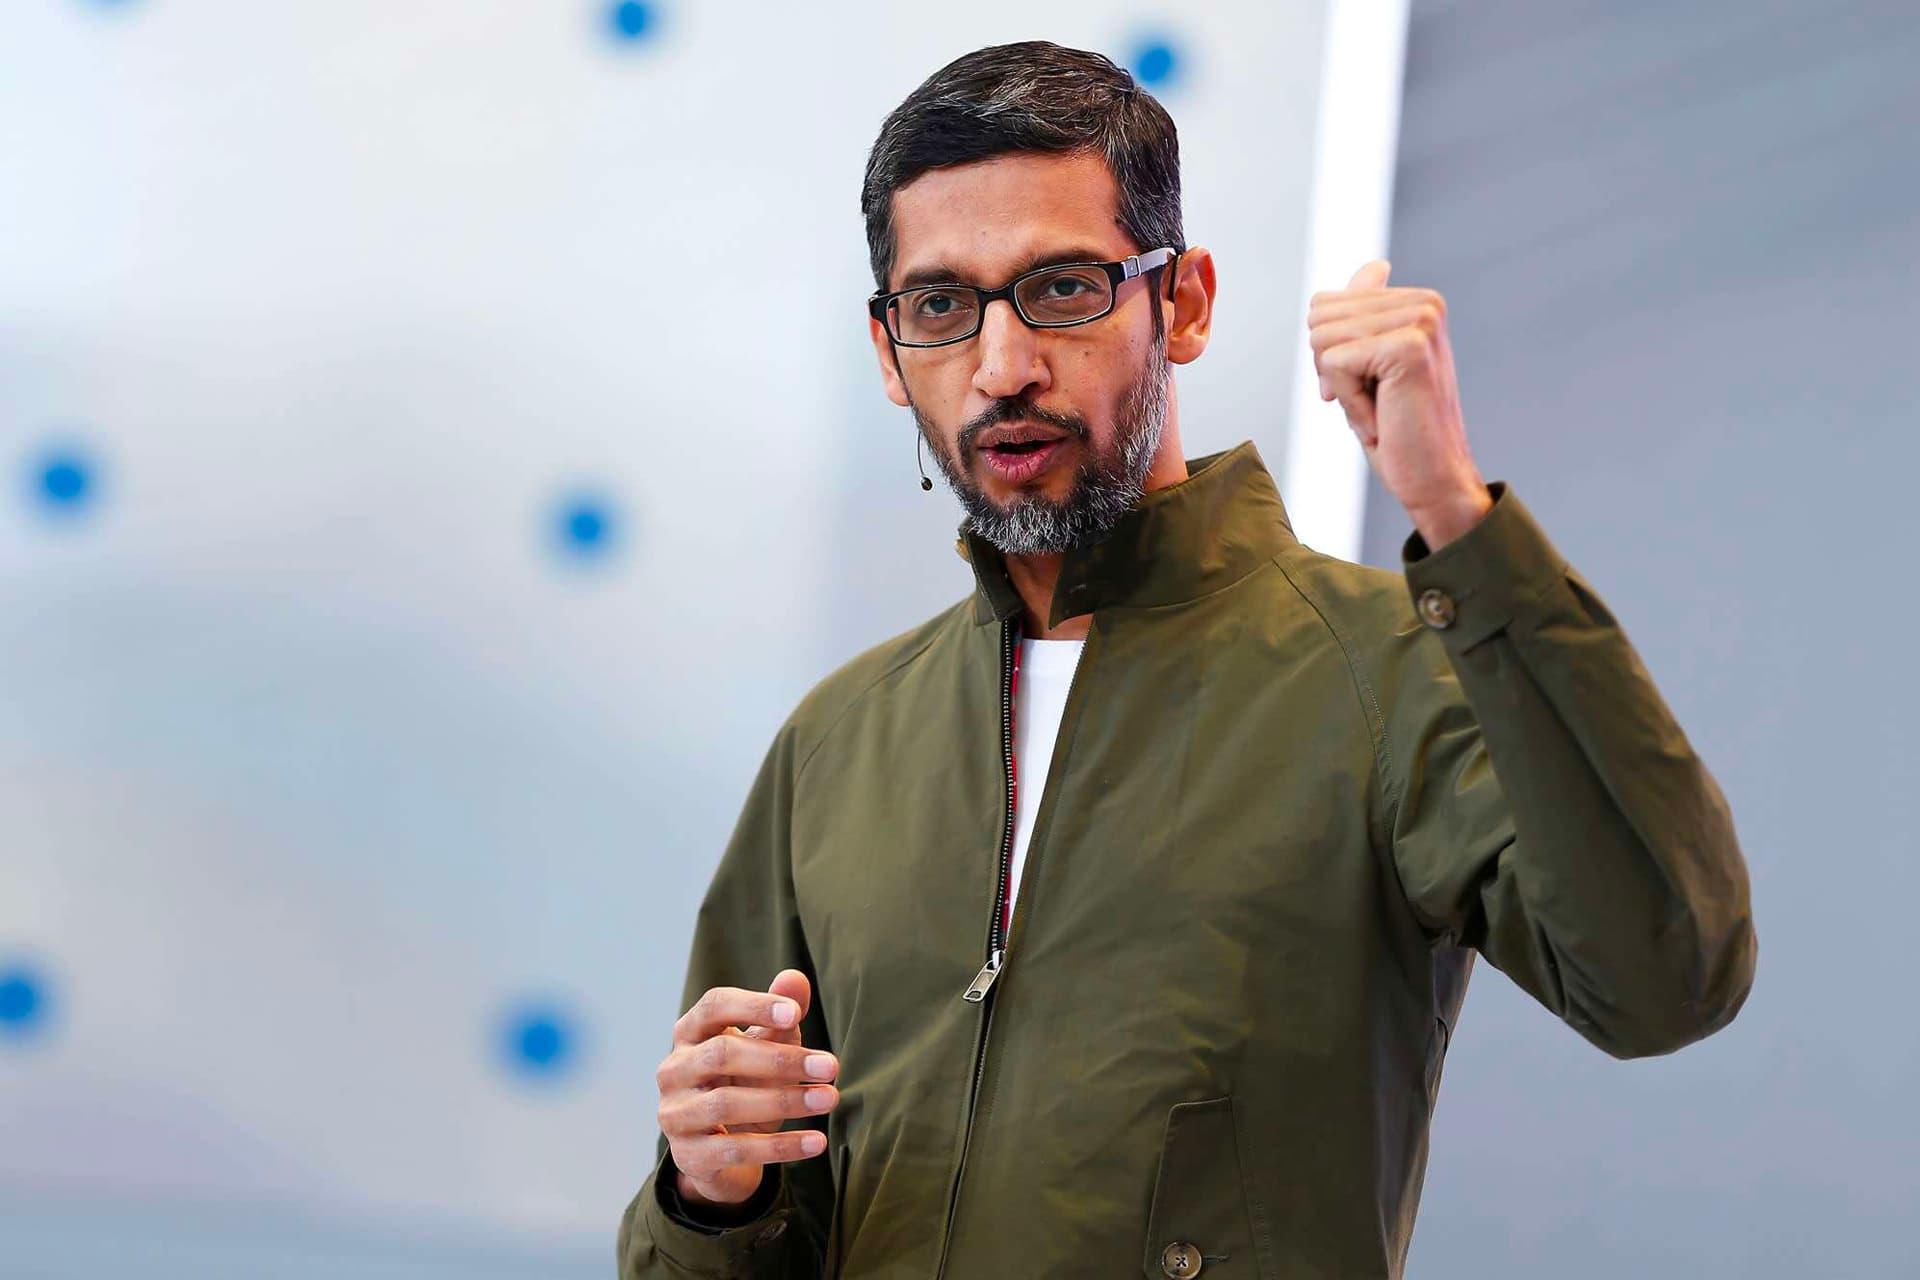 مرجع متخصصين ايران سوندار پيچاي / Sundar Pichai مديرعامل گوگل با كت سبز